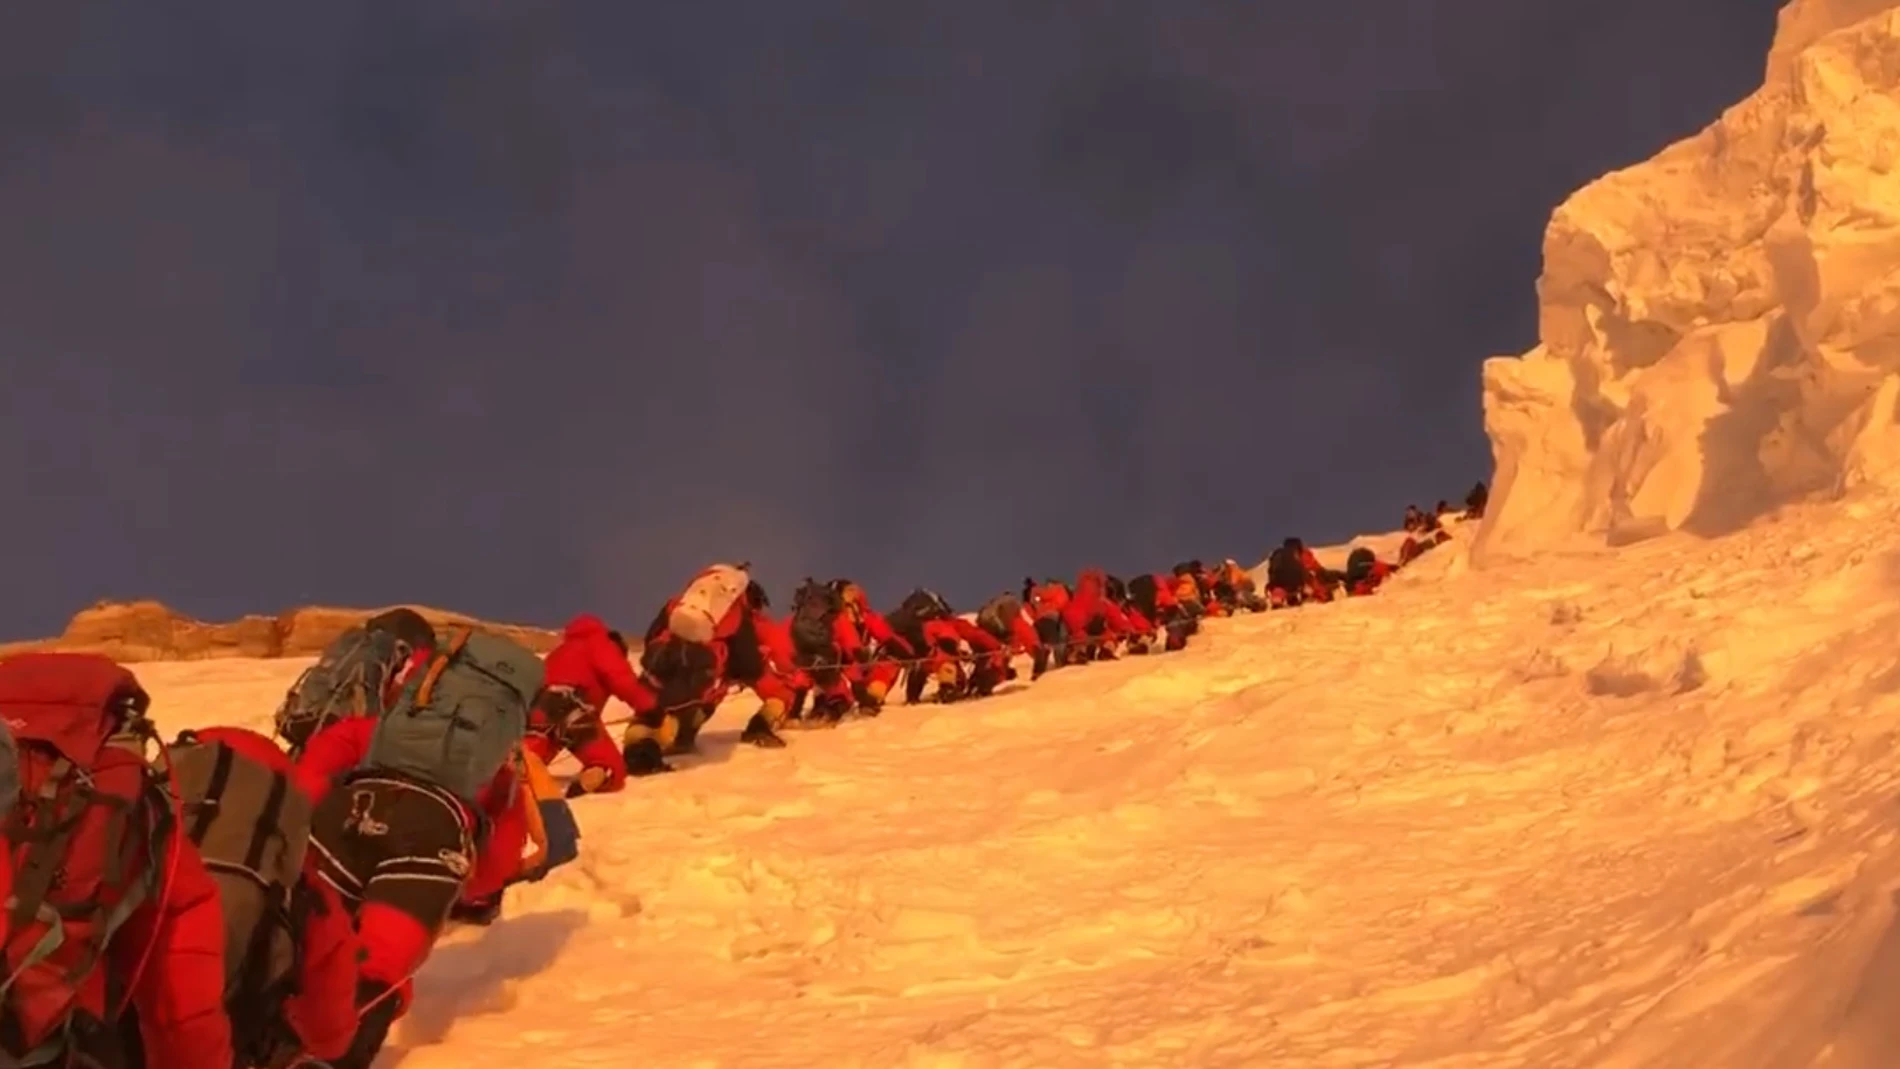 El sherpa Mingma G denuncia el atasco para escalar el K2 con un impactante vídeo